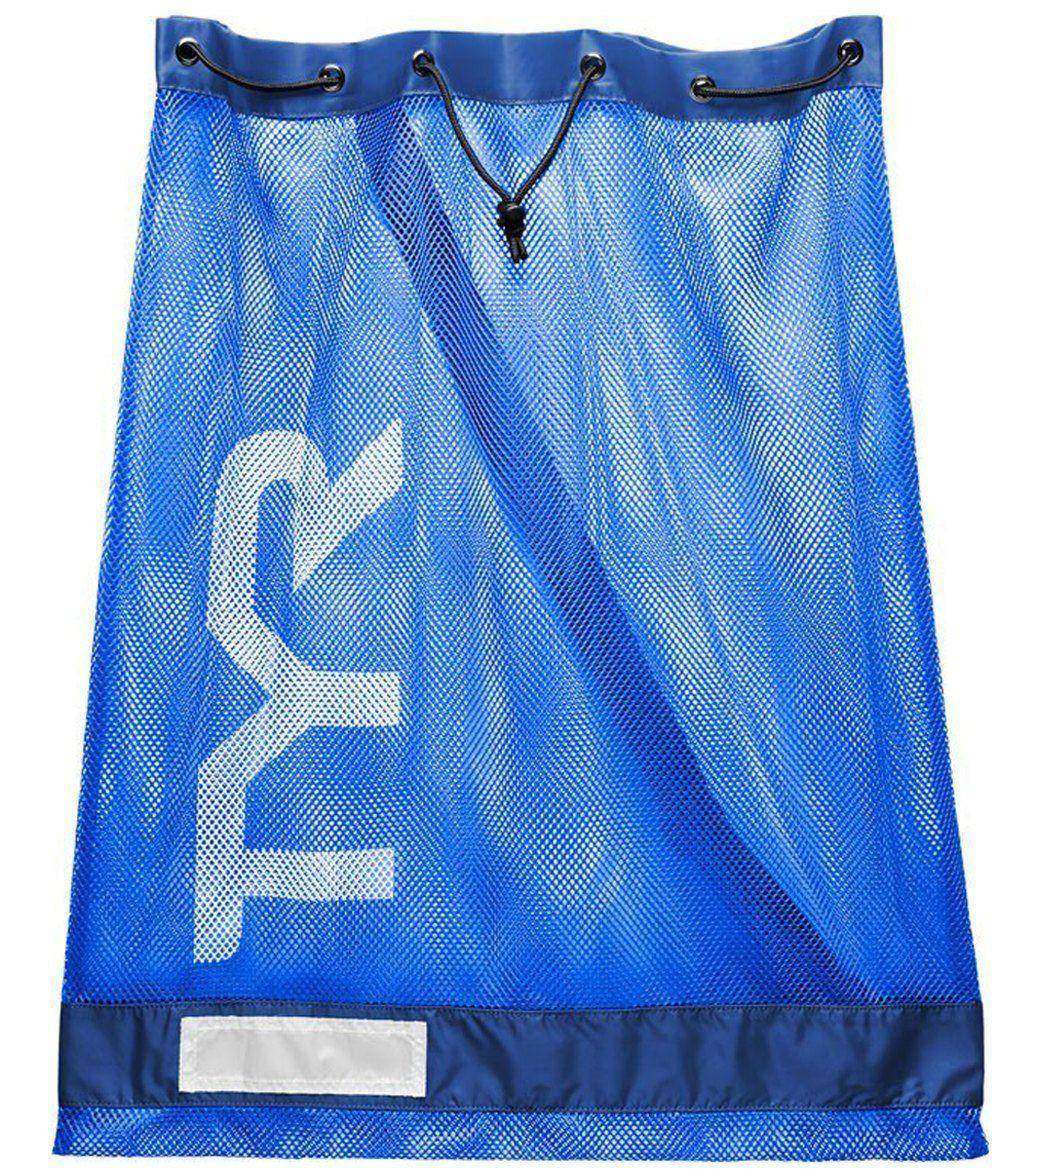 Blue coloured TYR mesh swim bag copy